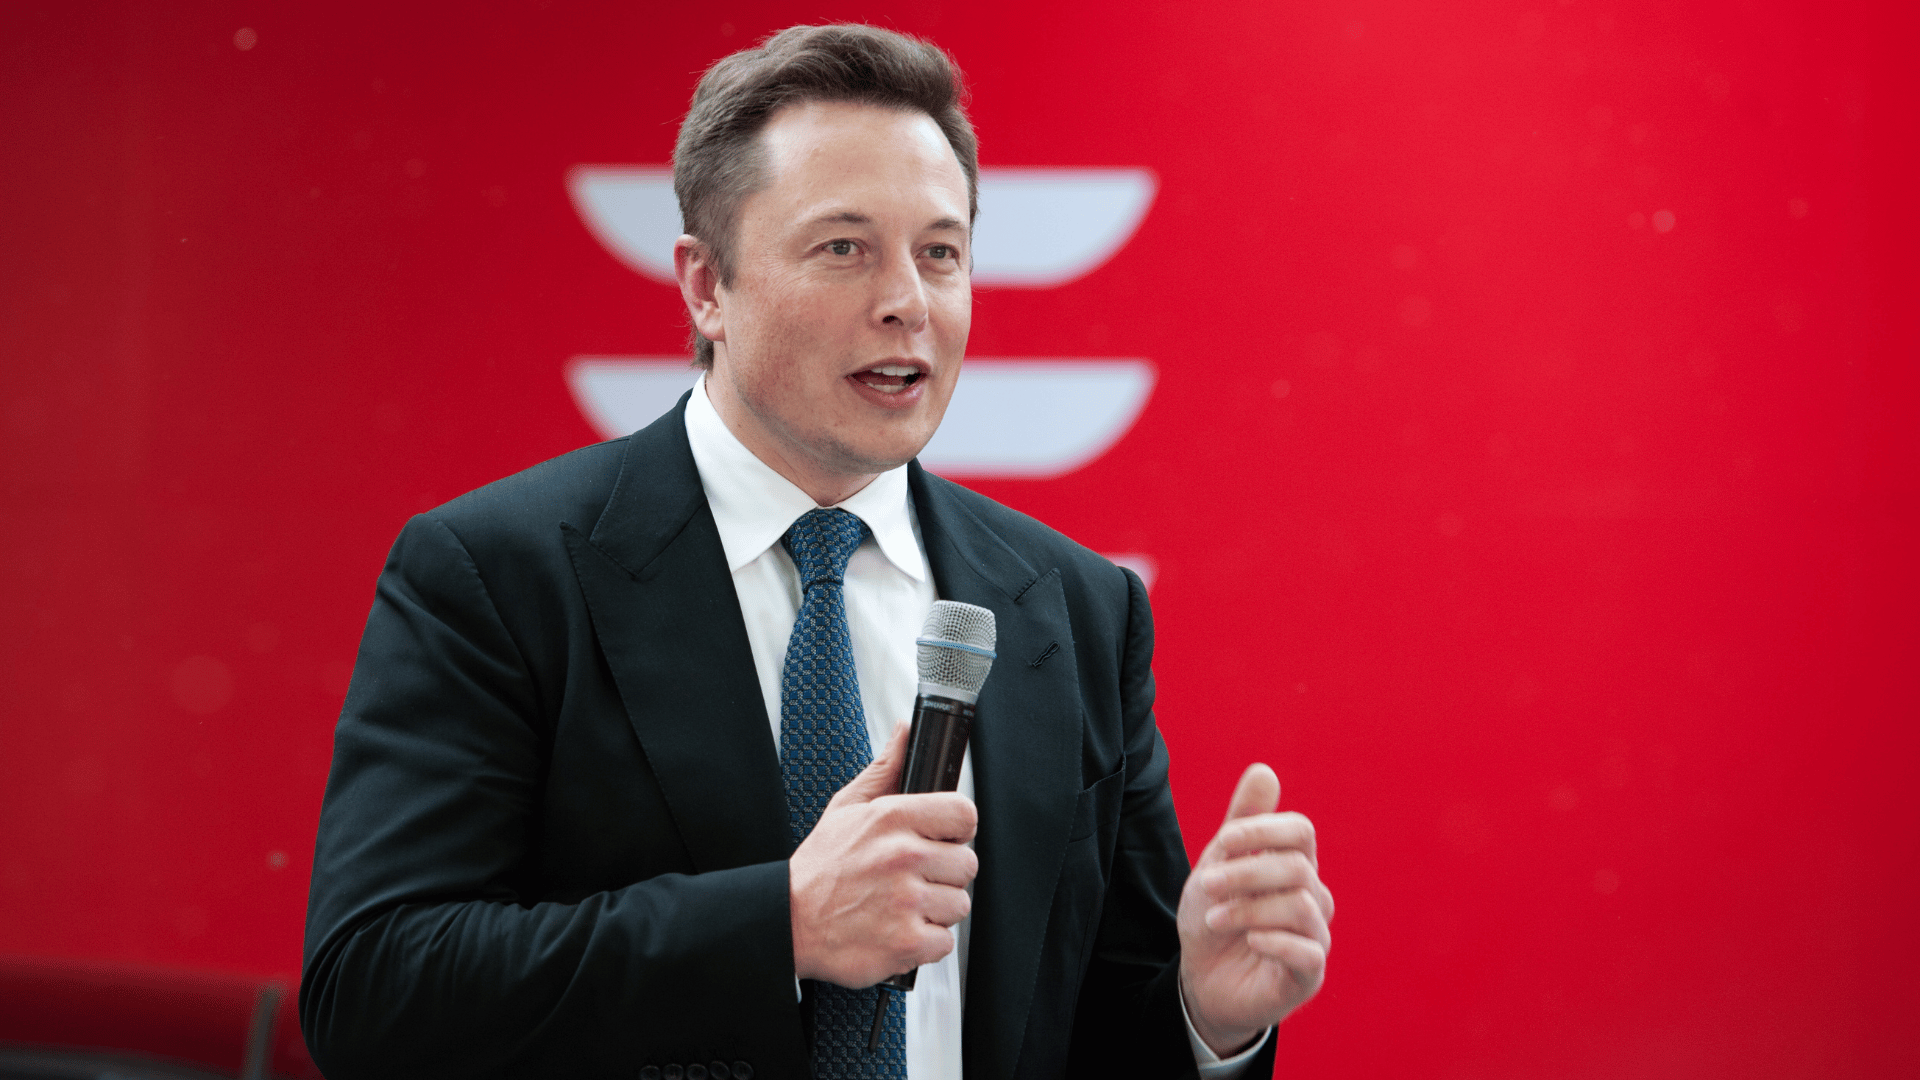 Imagem de Elon Musk. Ele segura um microfone e está sobre um fundo vermelho.